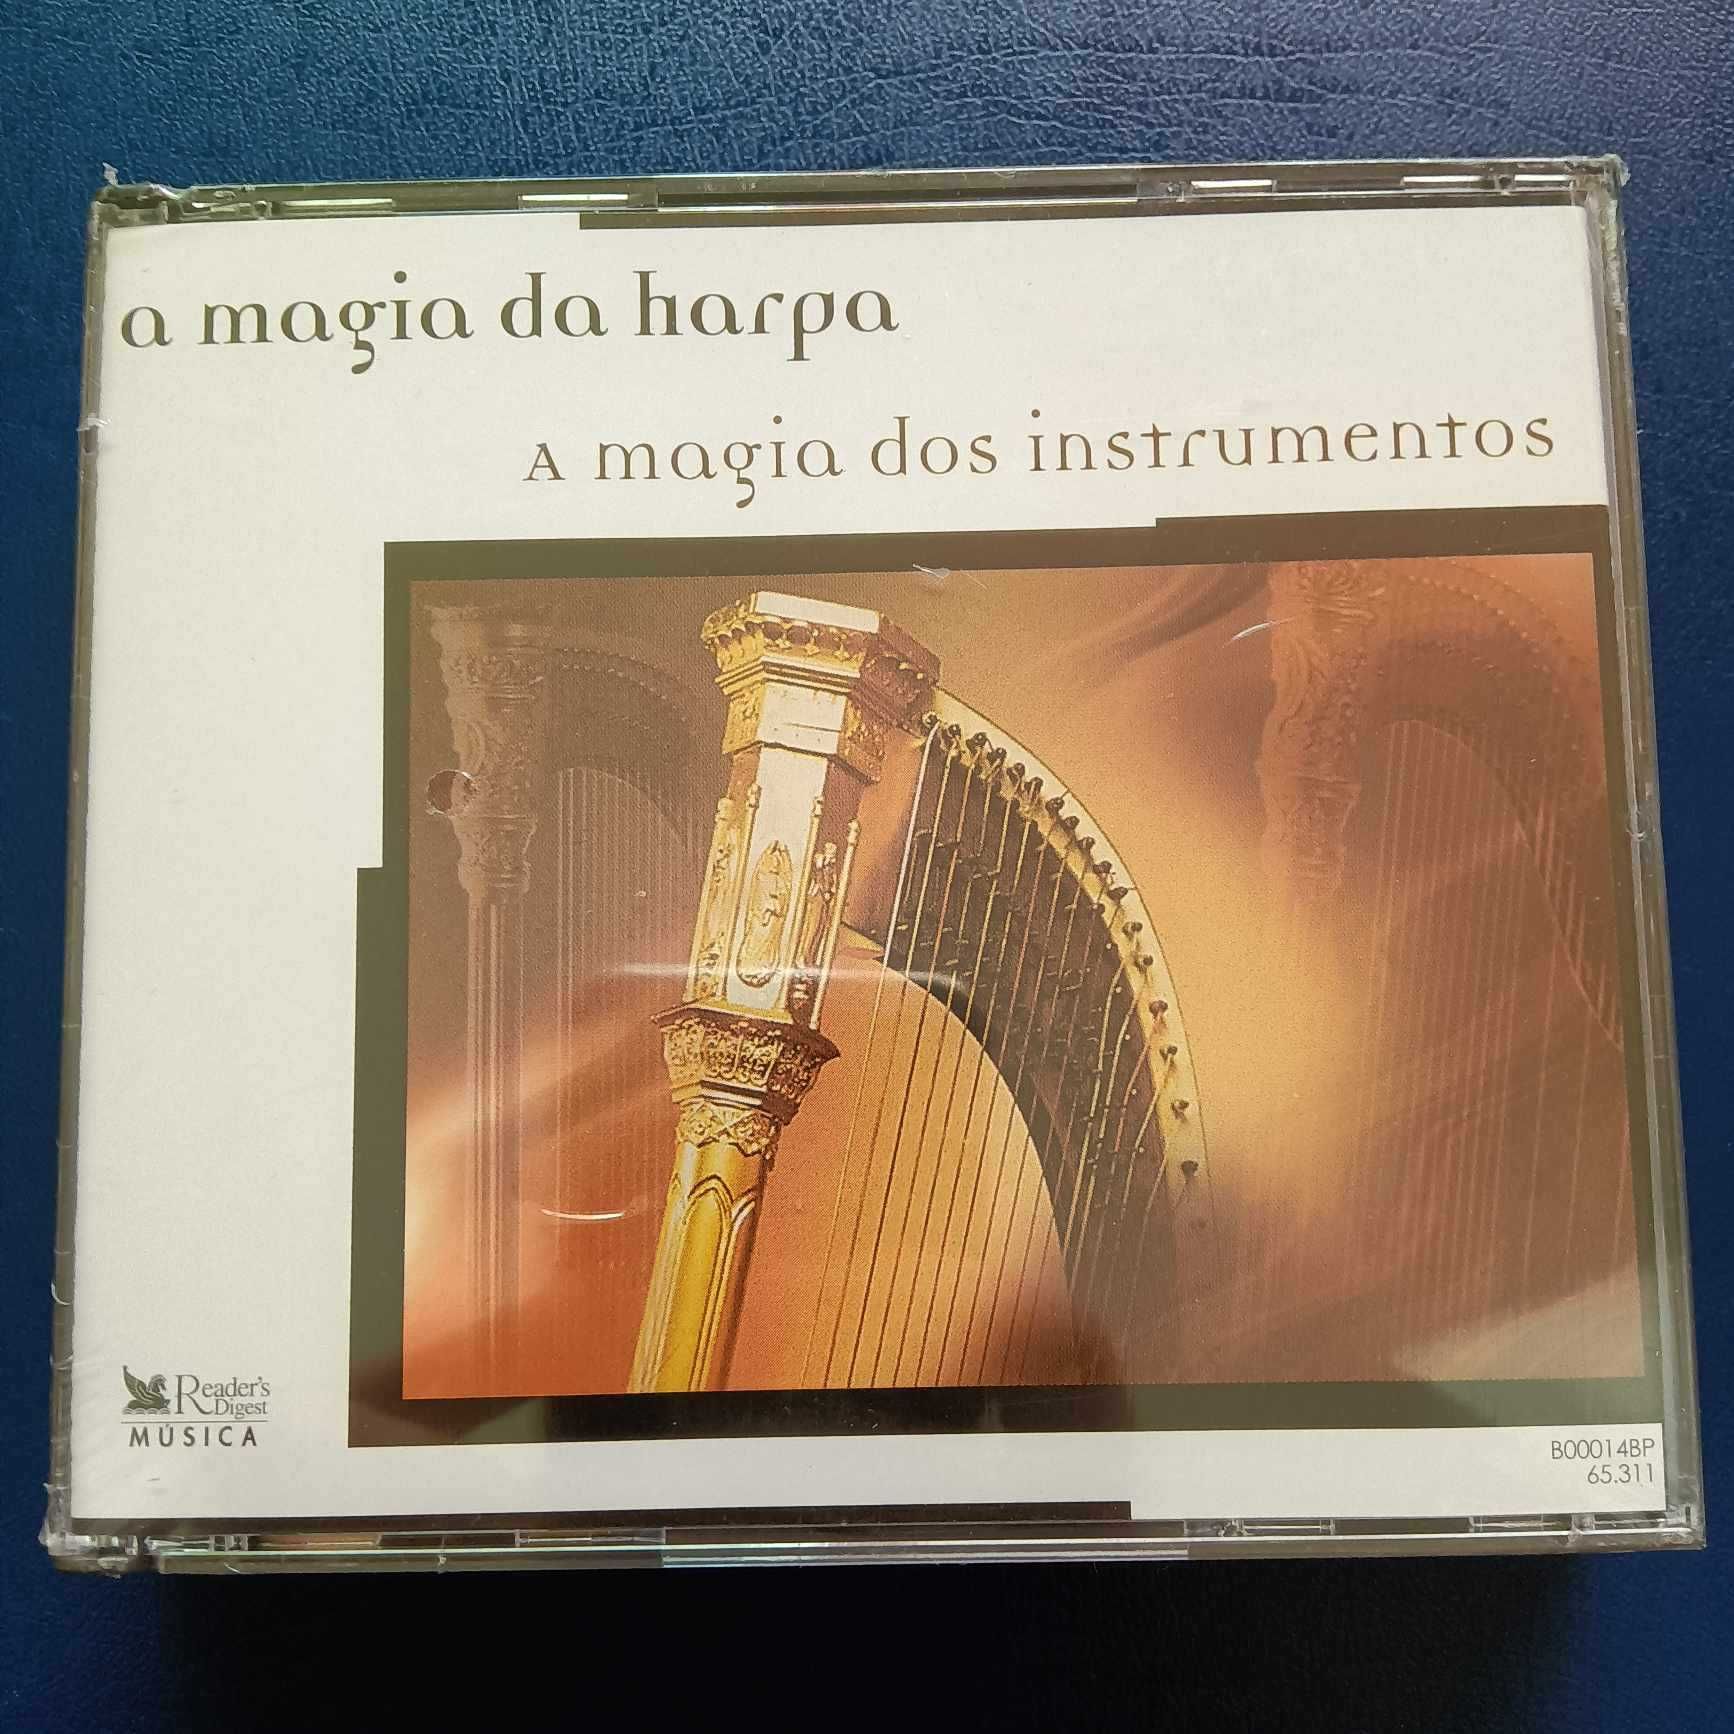 Coleção CD: A Magia dos Instrumentos das Seleções Readers Digest